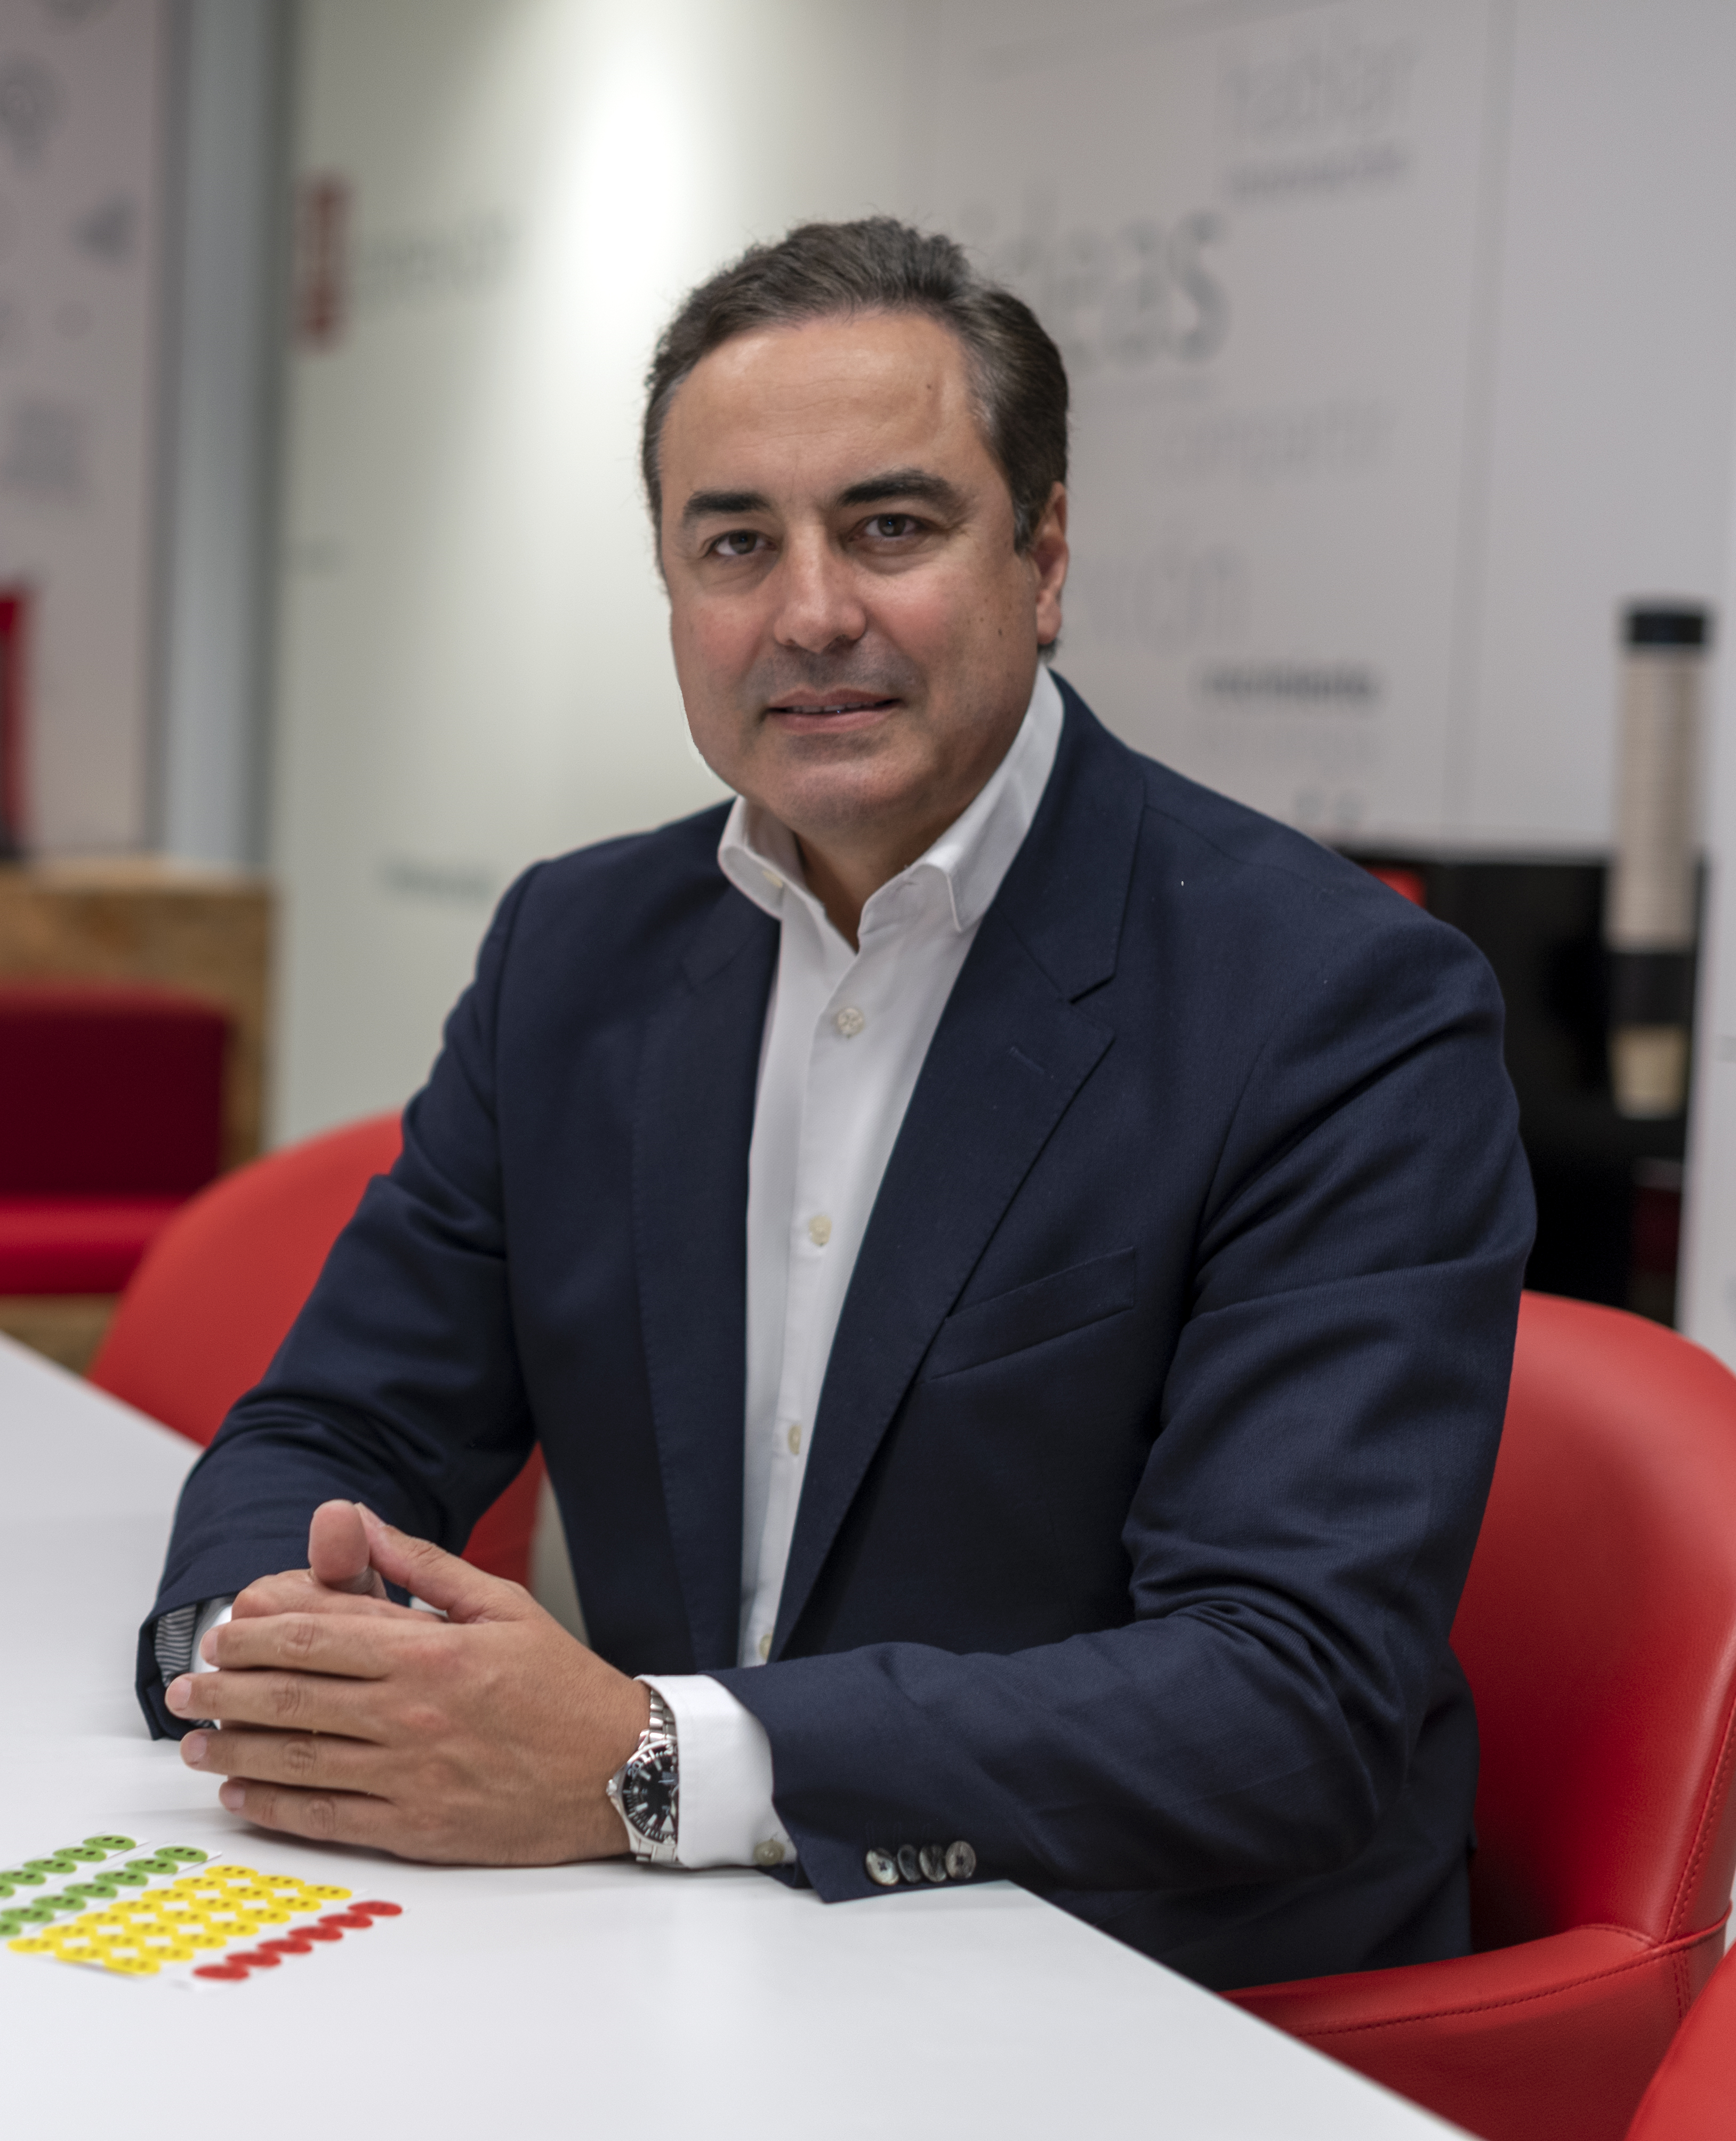 Ignacio Martín Cuevas, director de Experiencia de Cliente y Calidad de Banco Santander